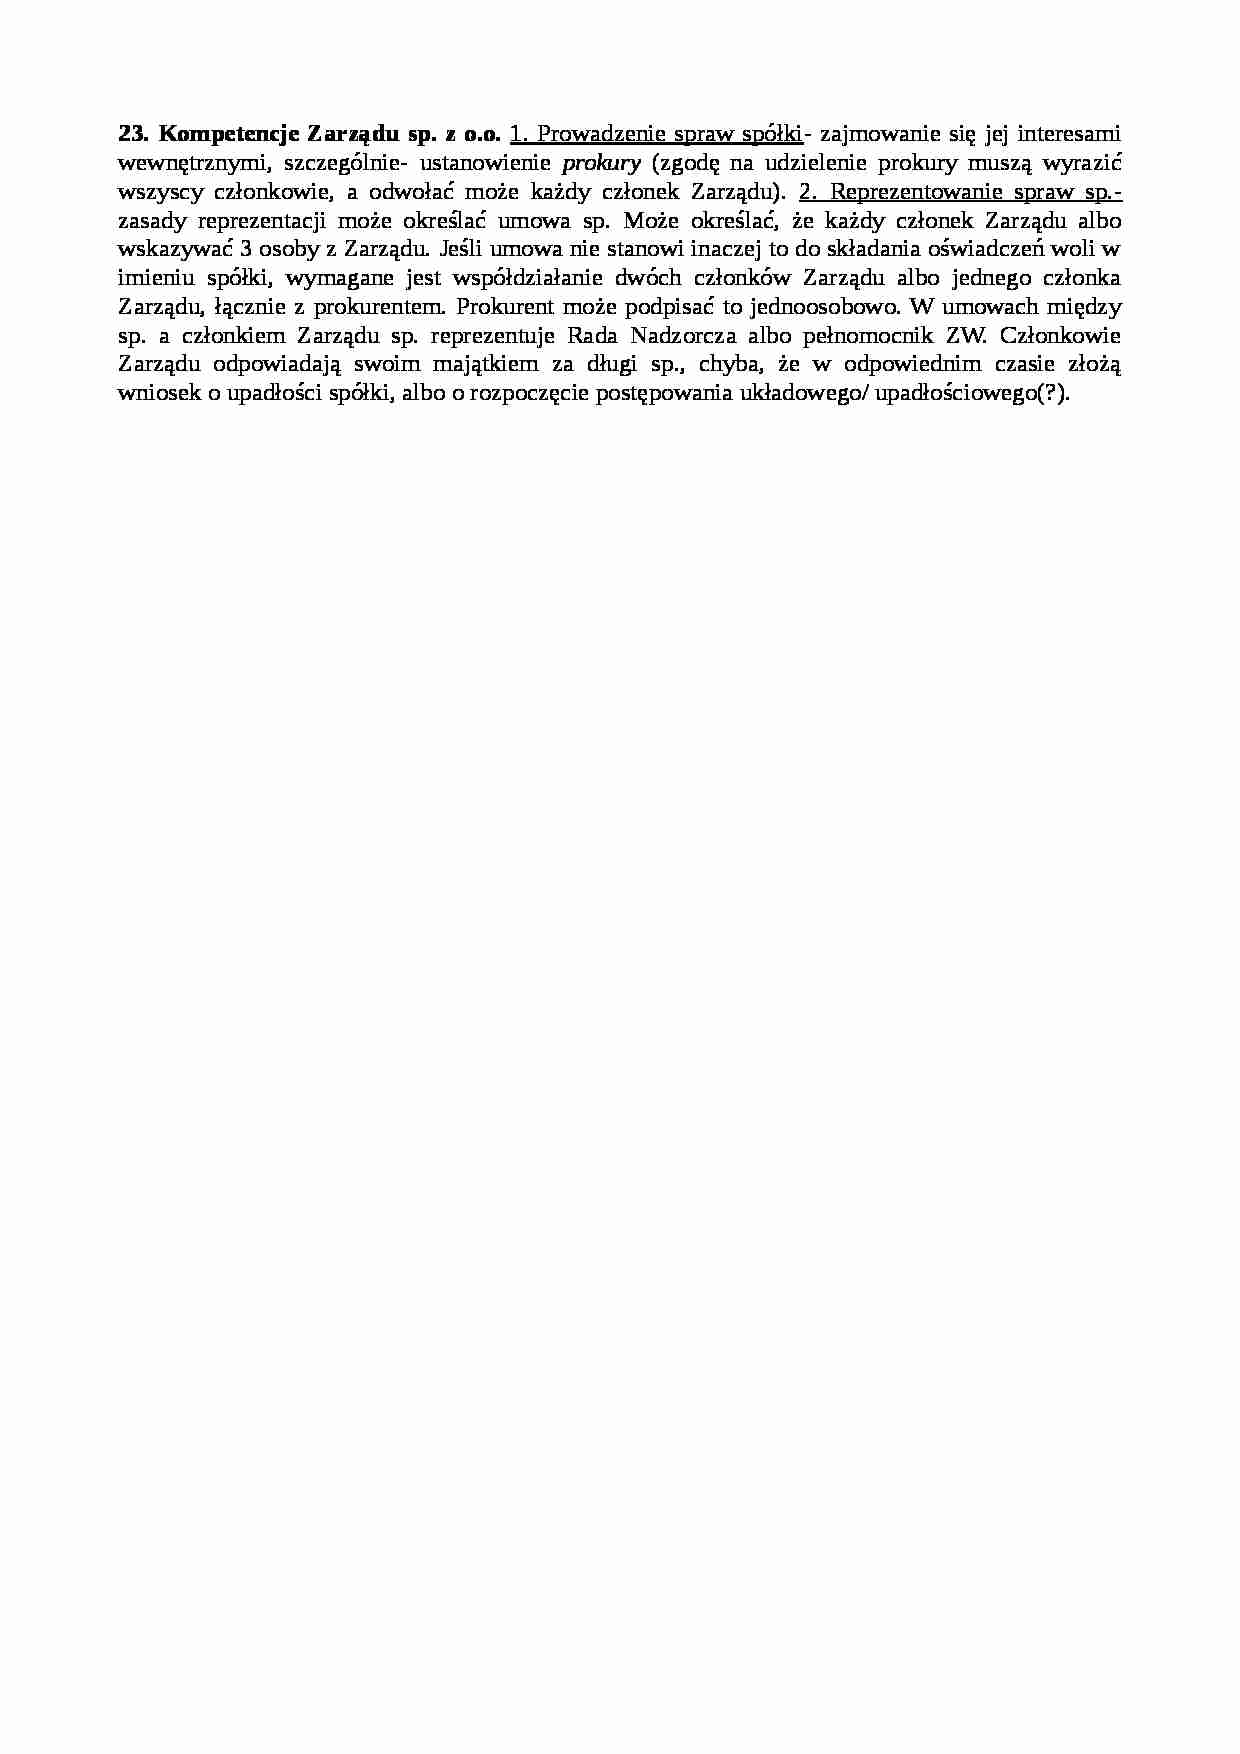 Kompetencje Zarządu sp. z o.o. - strona 1